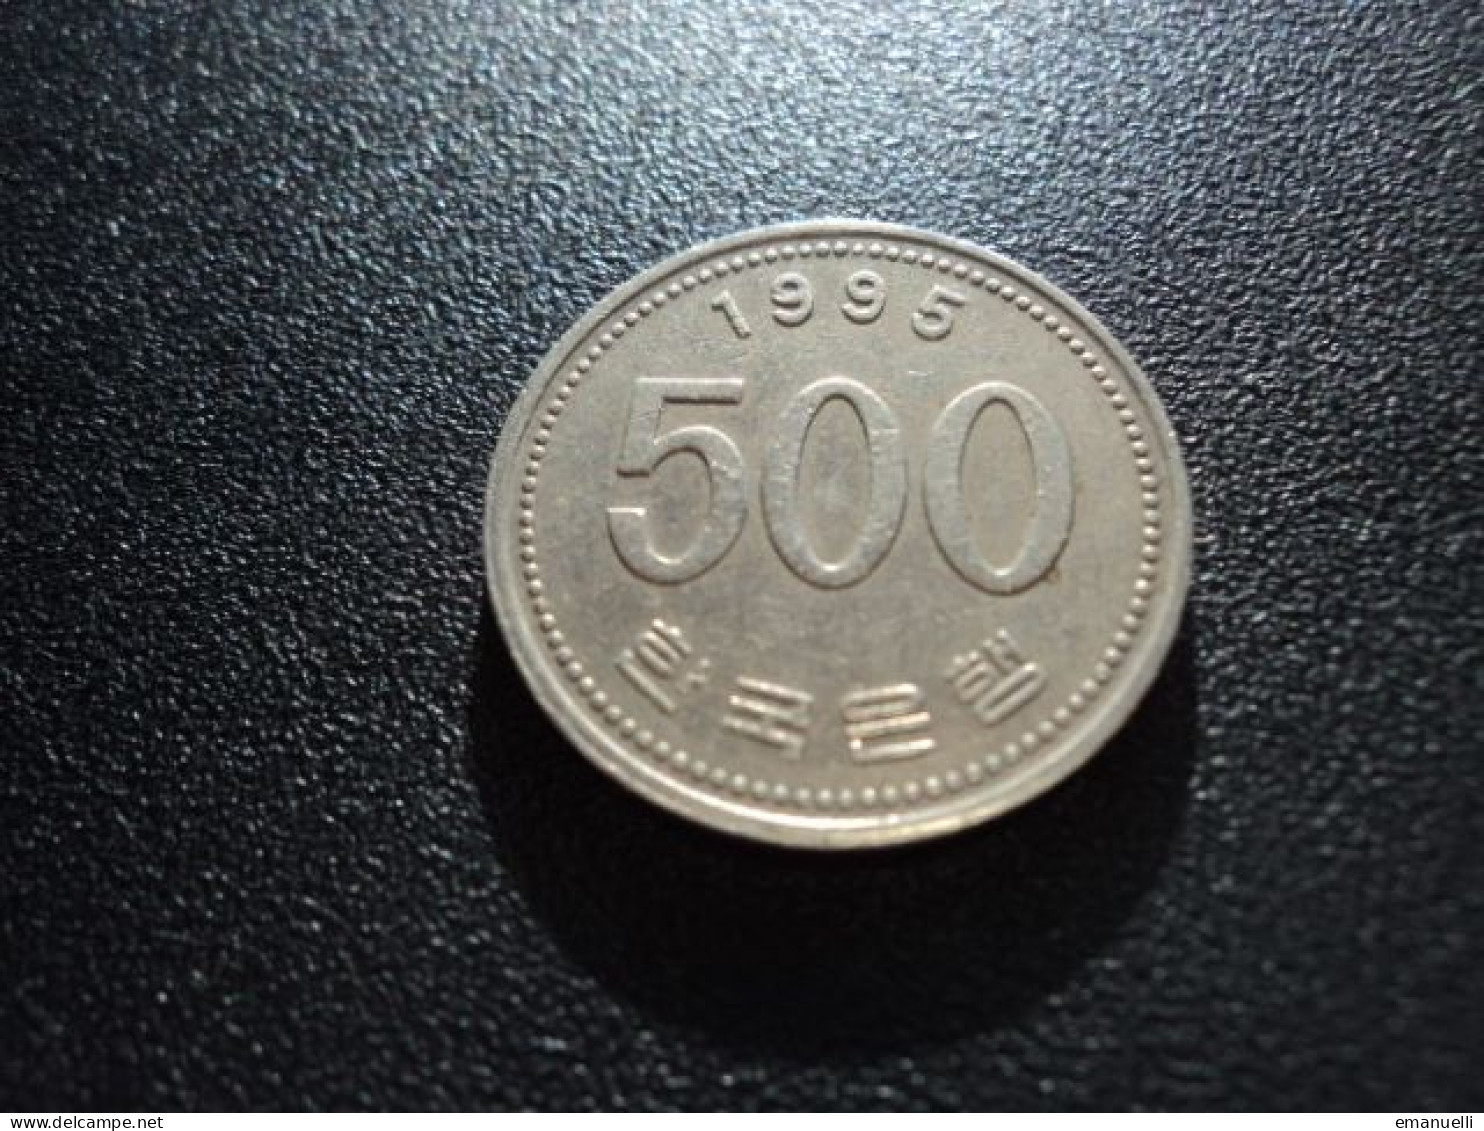 CORÉE DU SUD : 500 WON   1992    KM 27     TTB - Corée Du Sud